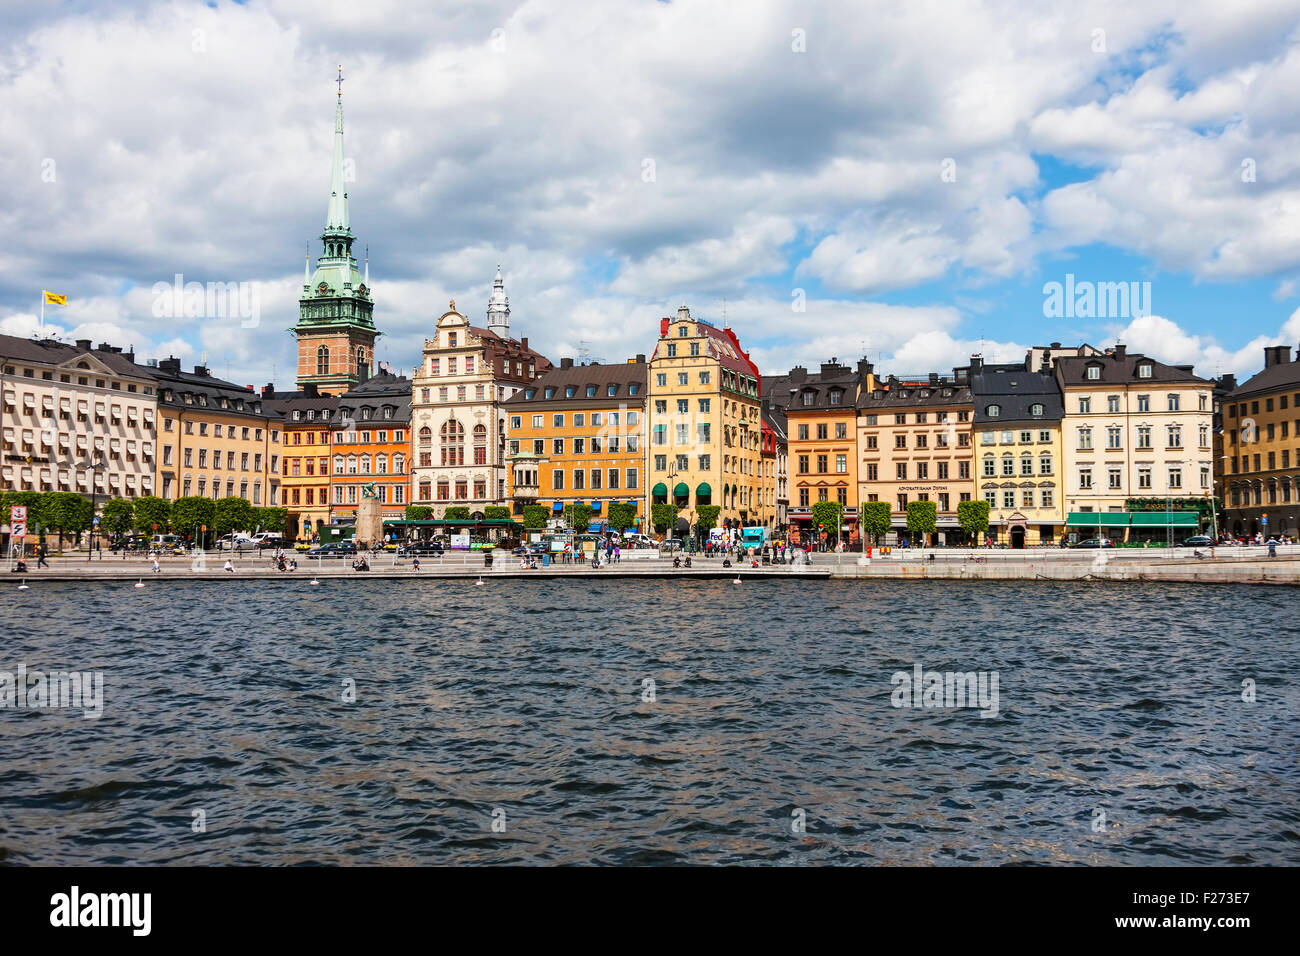 Stockholm-Kathedrale am Ufer, Munkbroleden, Gamla Stan, Stockholm, Schweden Stockfoto